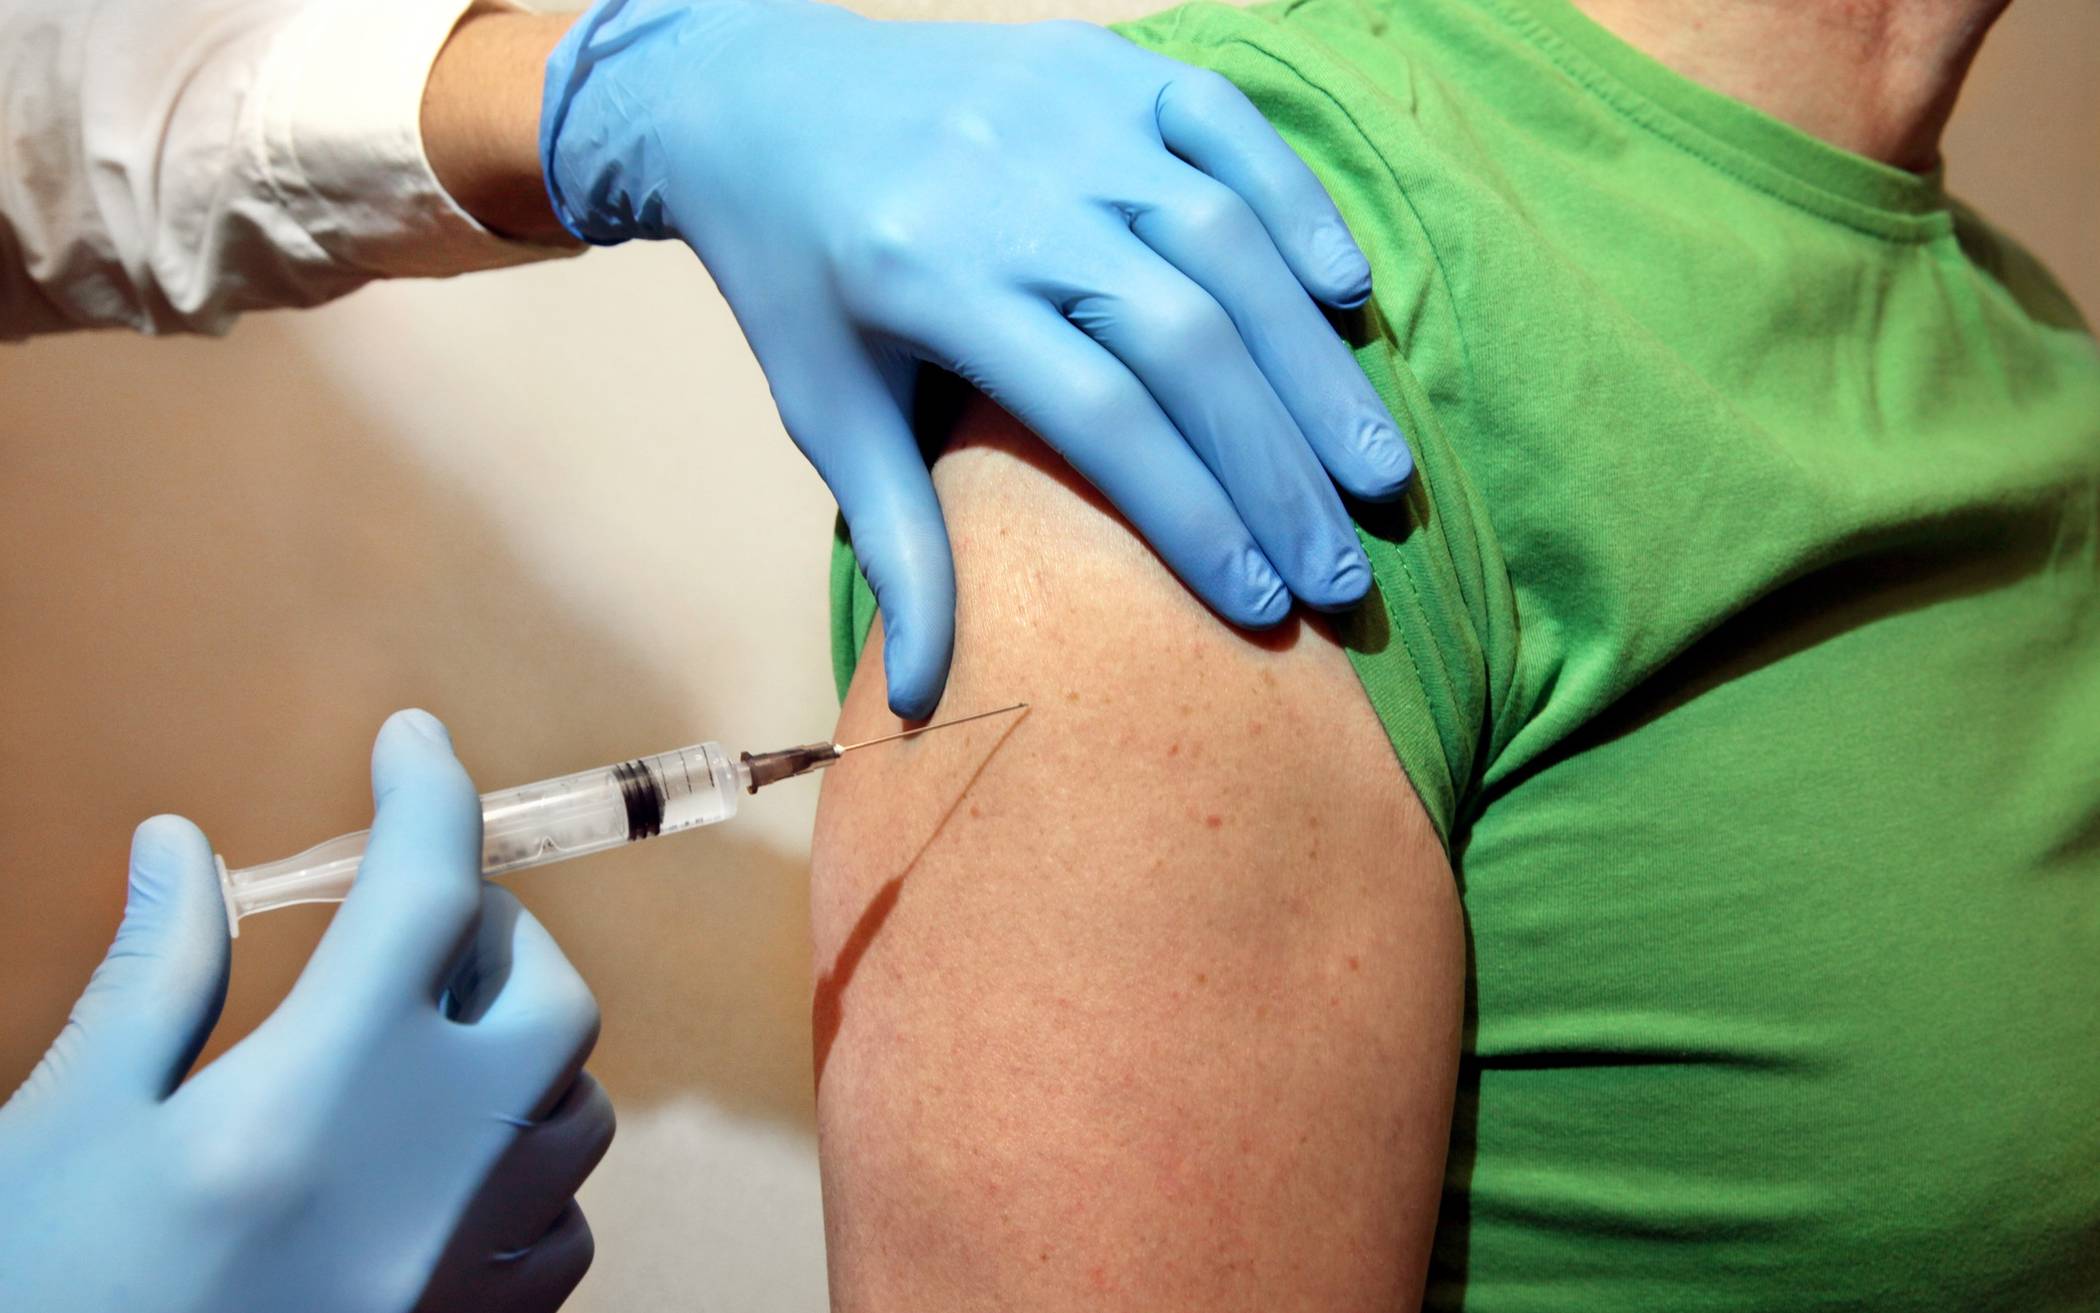 Stationäre Impfstelle geht an den Start